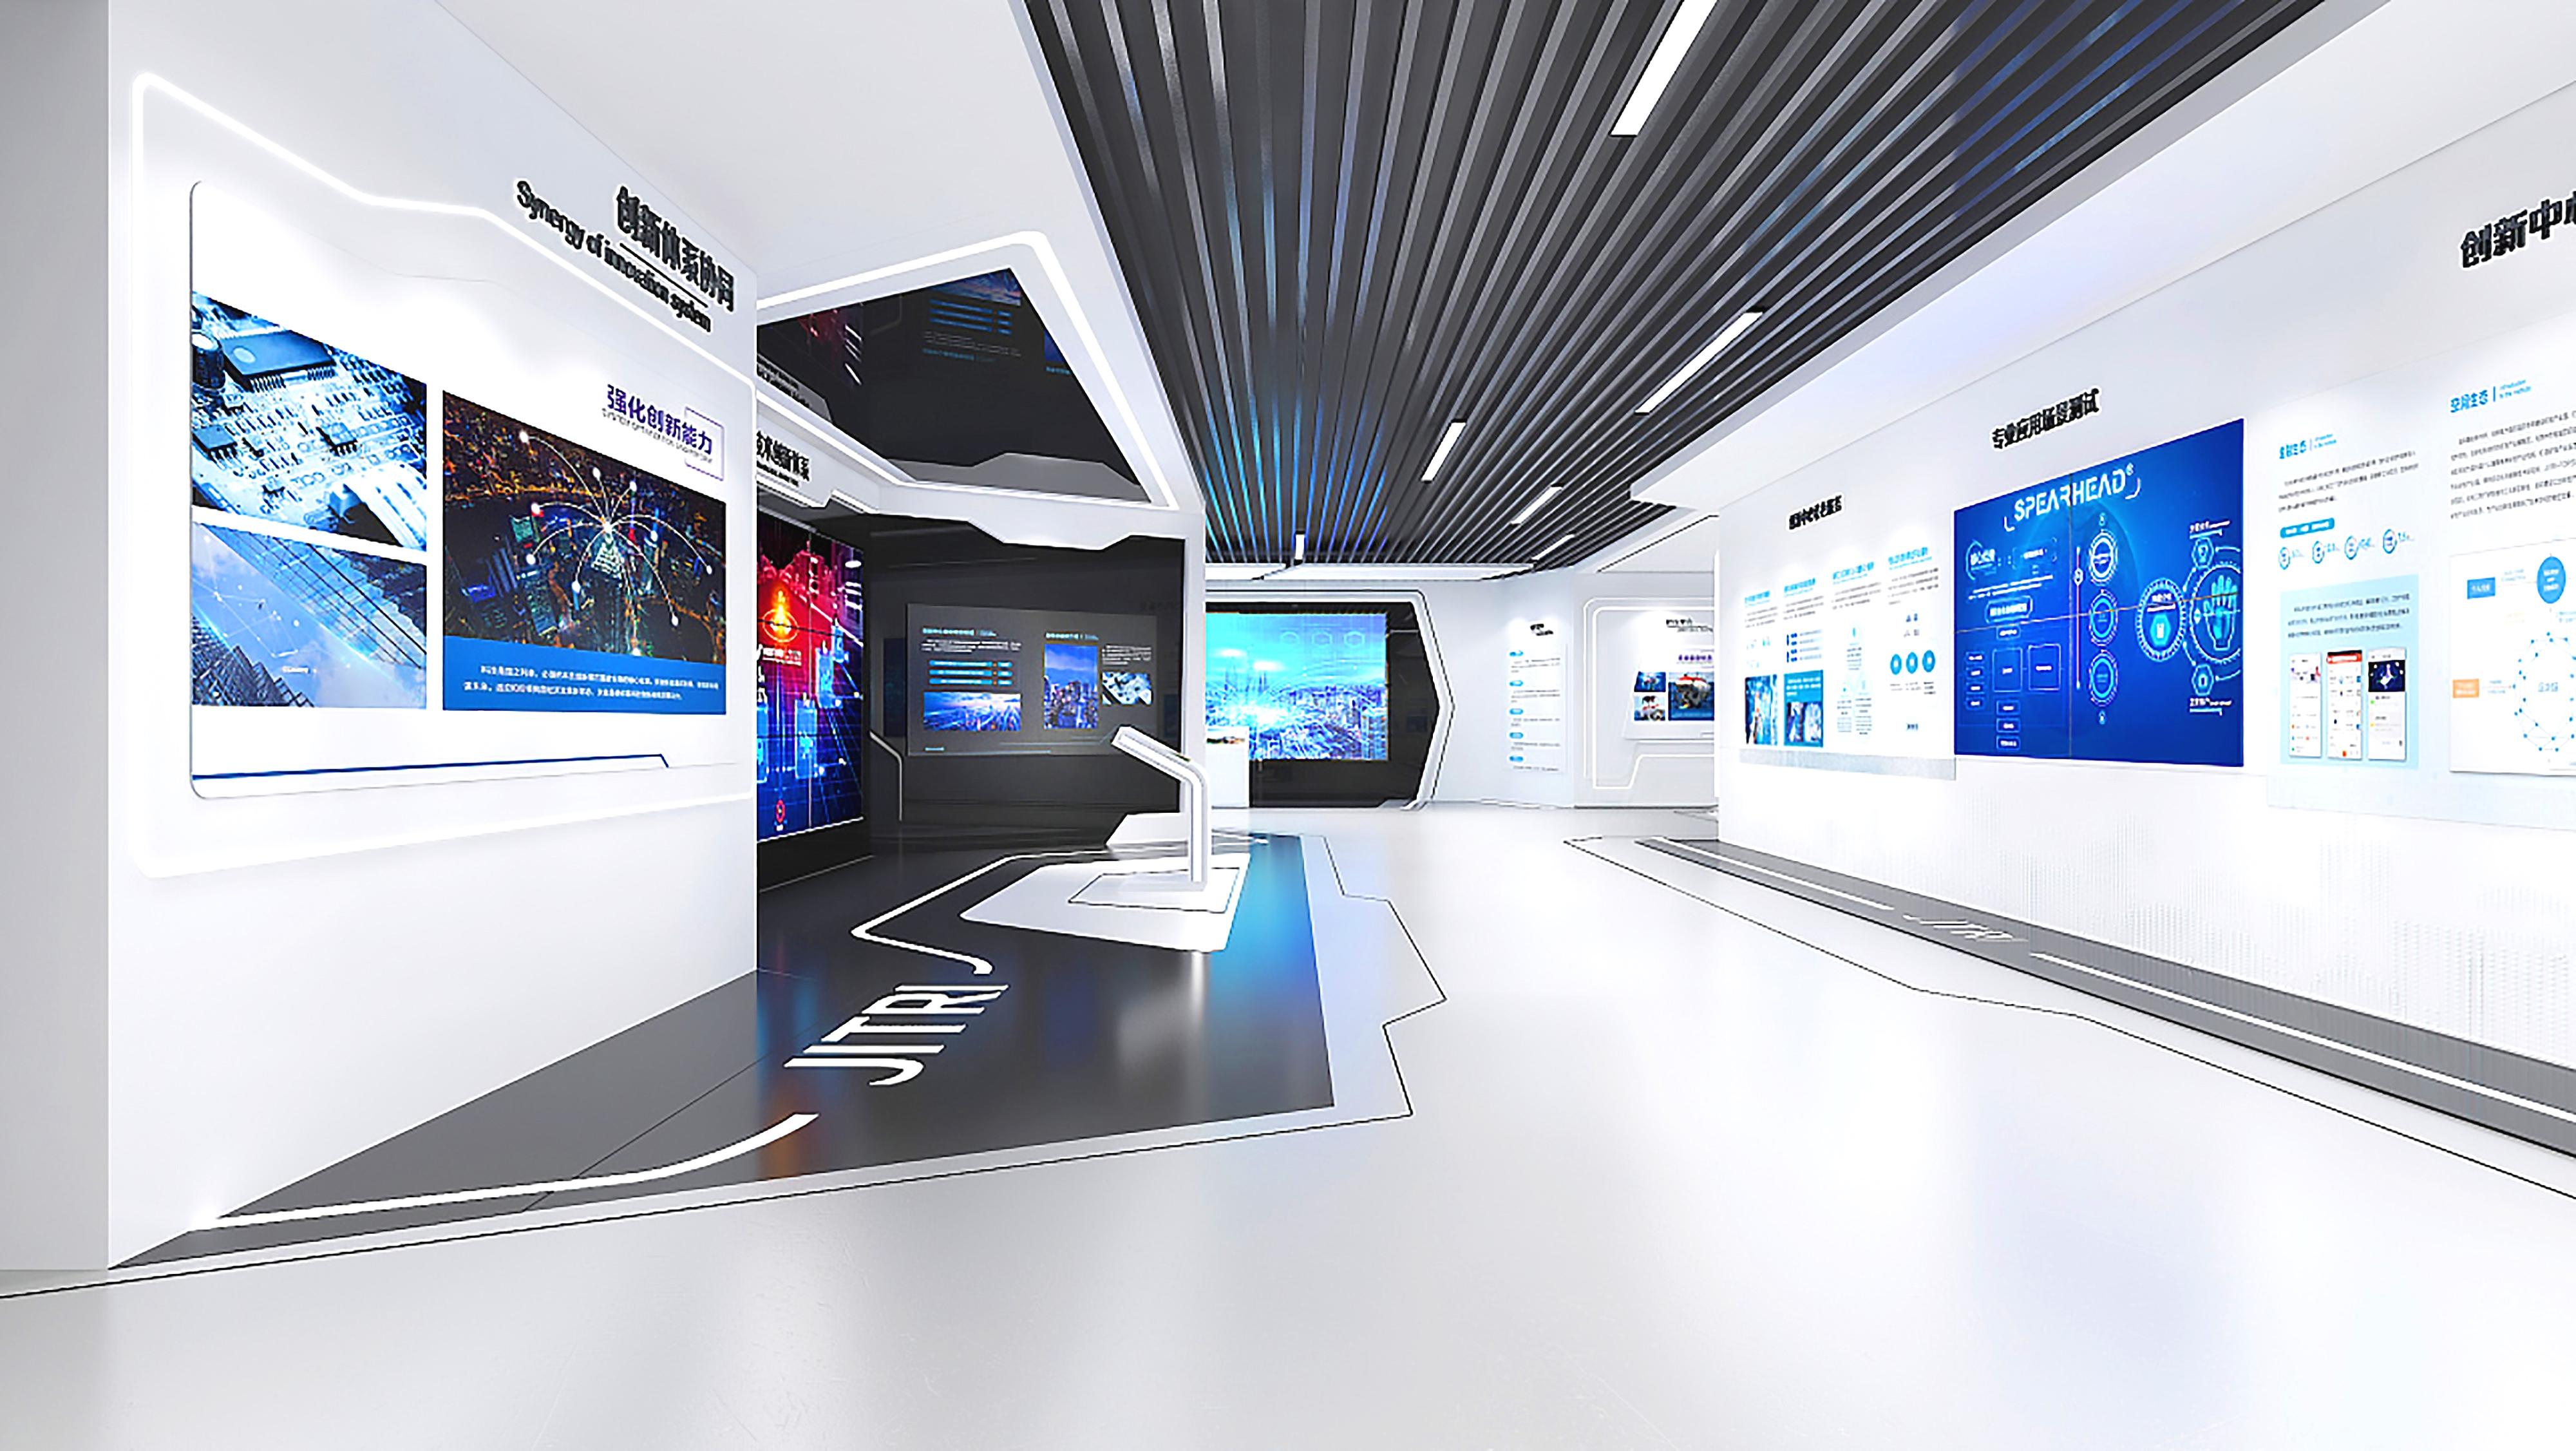 这是一张展示现代科技展览室的图片，室内设计现代简洁，墙上装有多个显示屏，展示数据和信息图表。